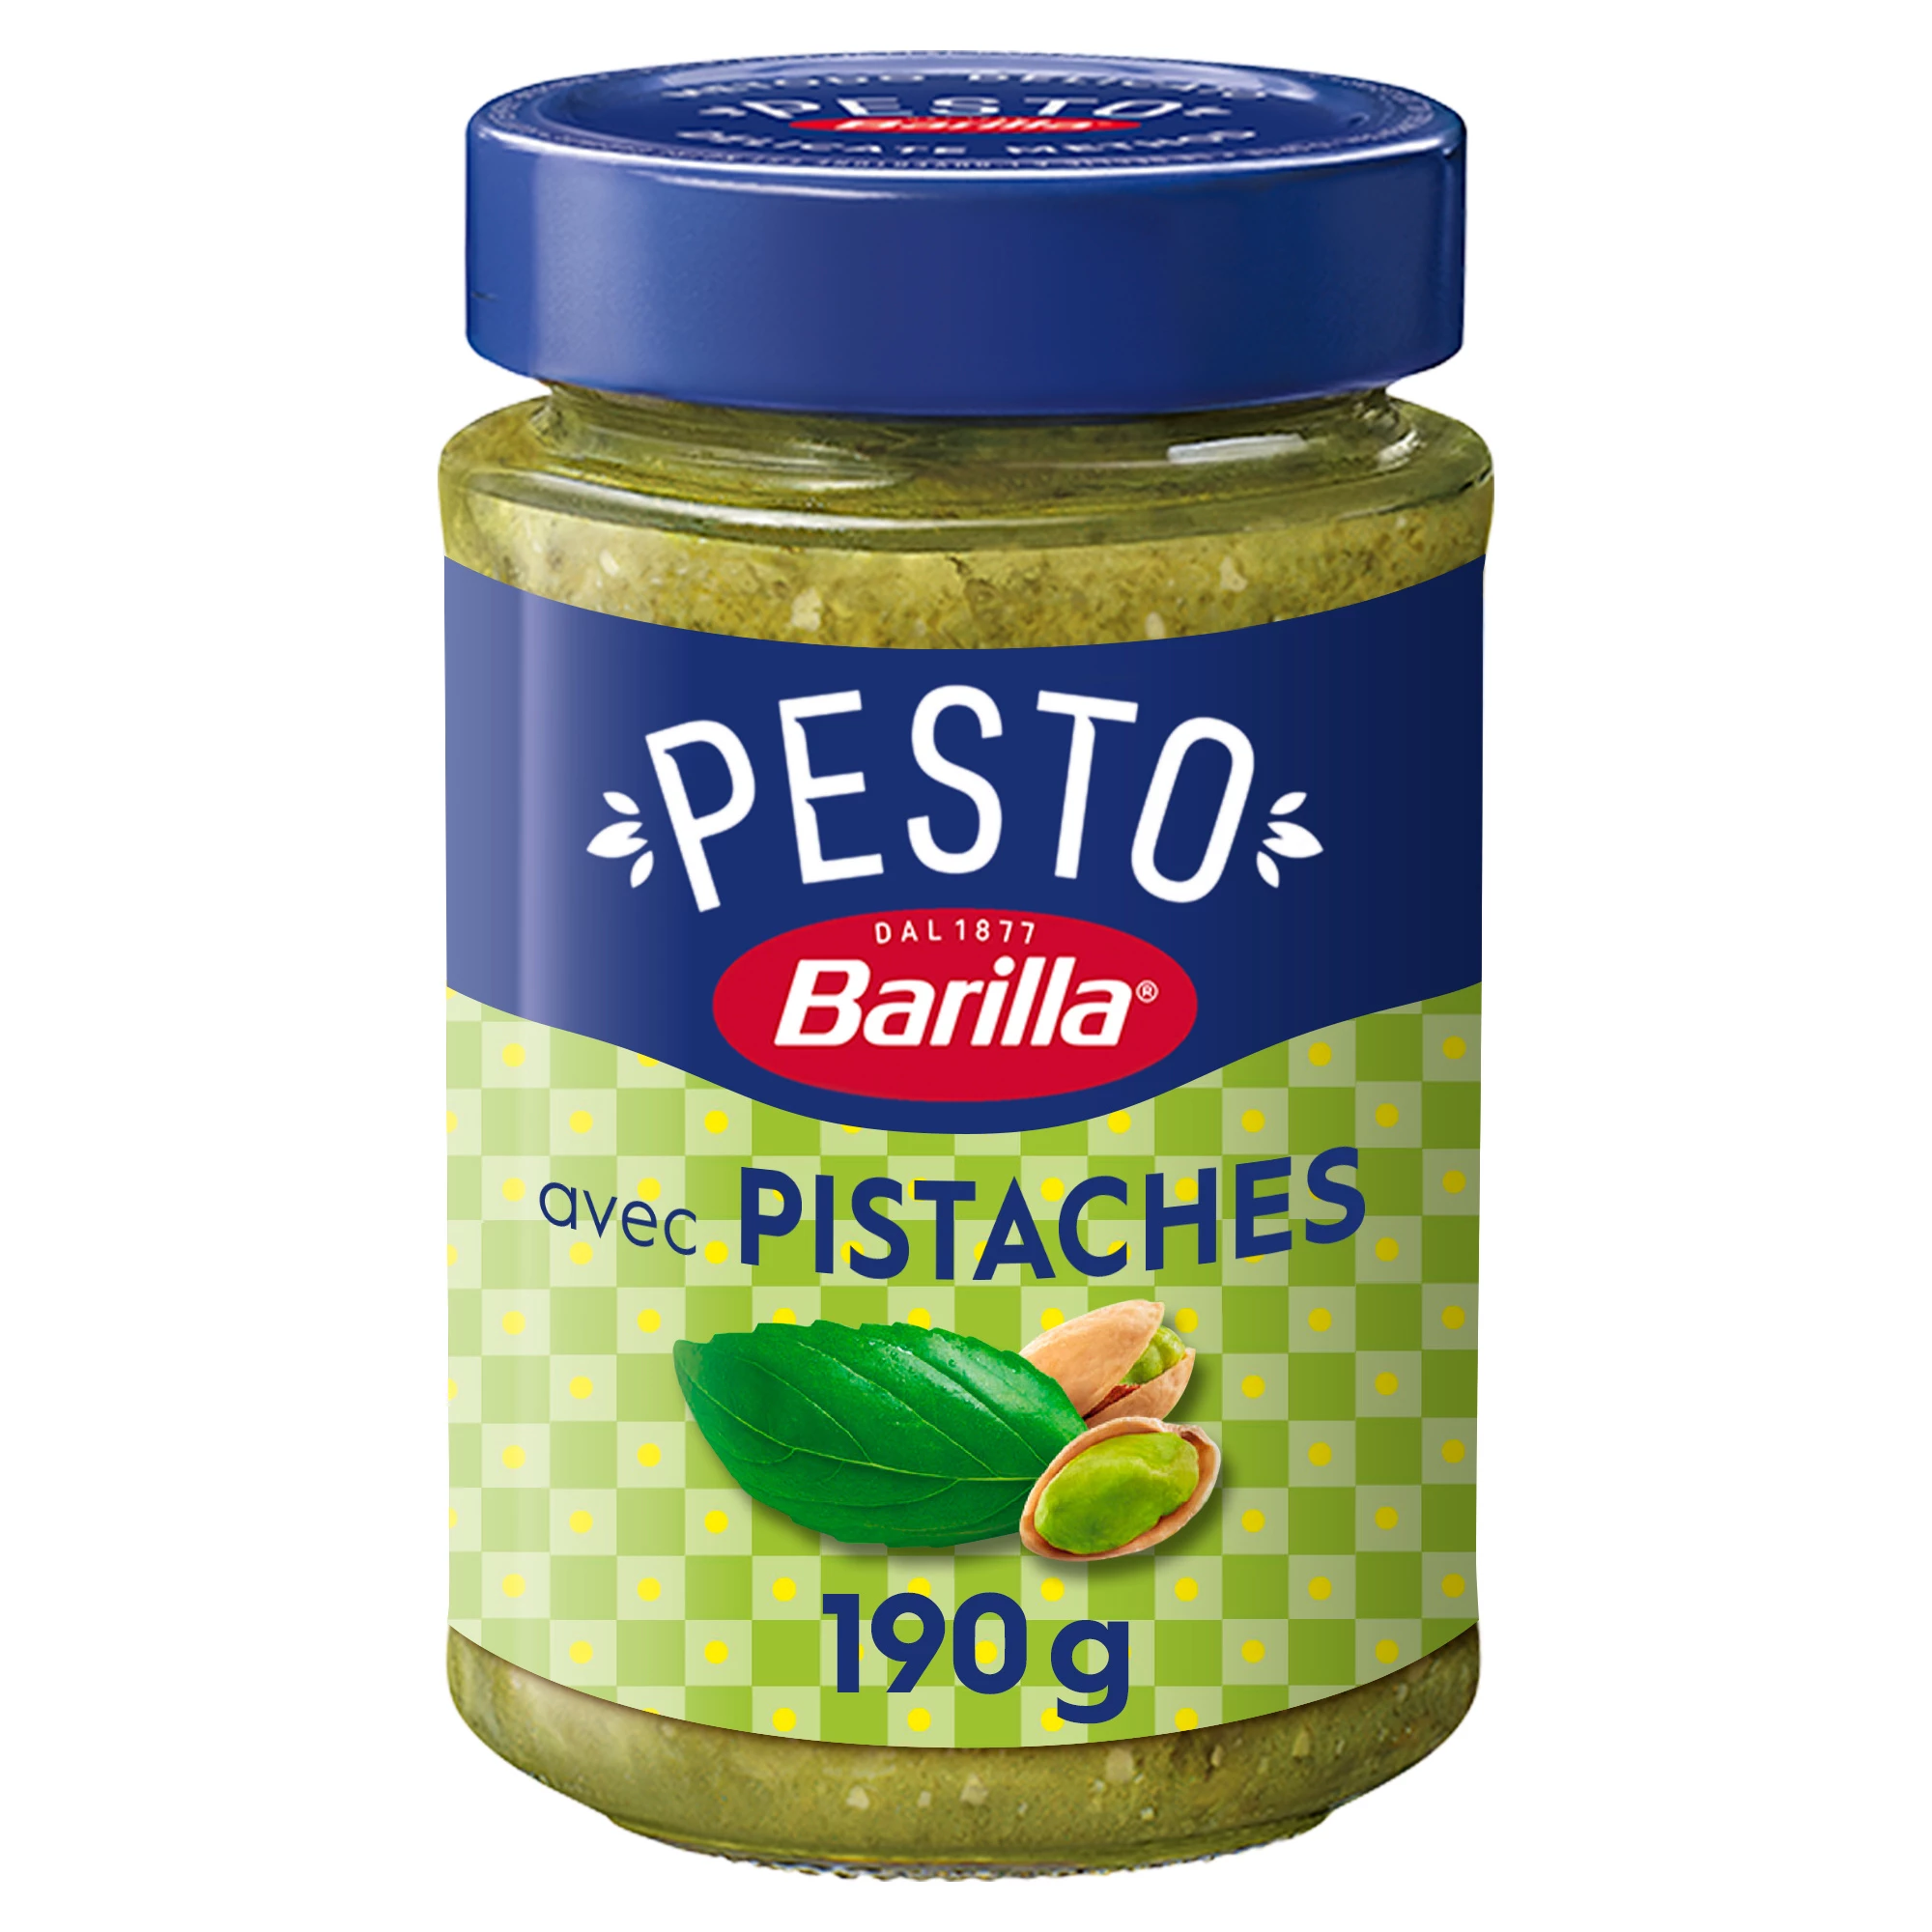 Pestosaus met pistache en basilicum, 190 g -  BARILLA